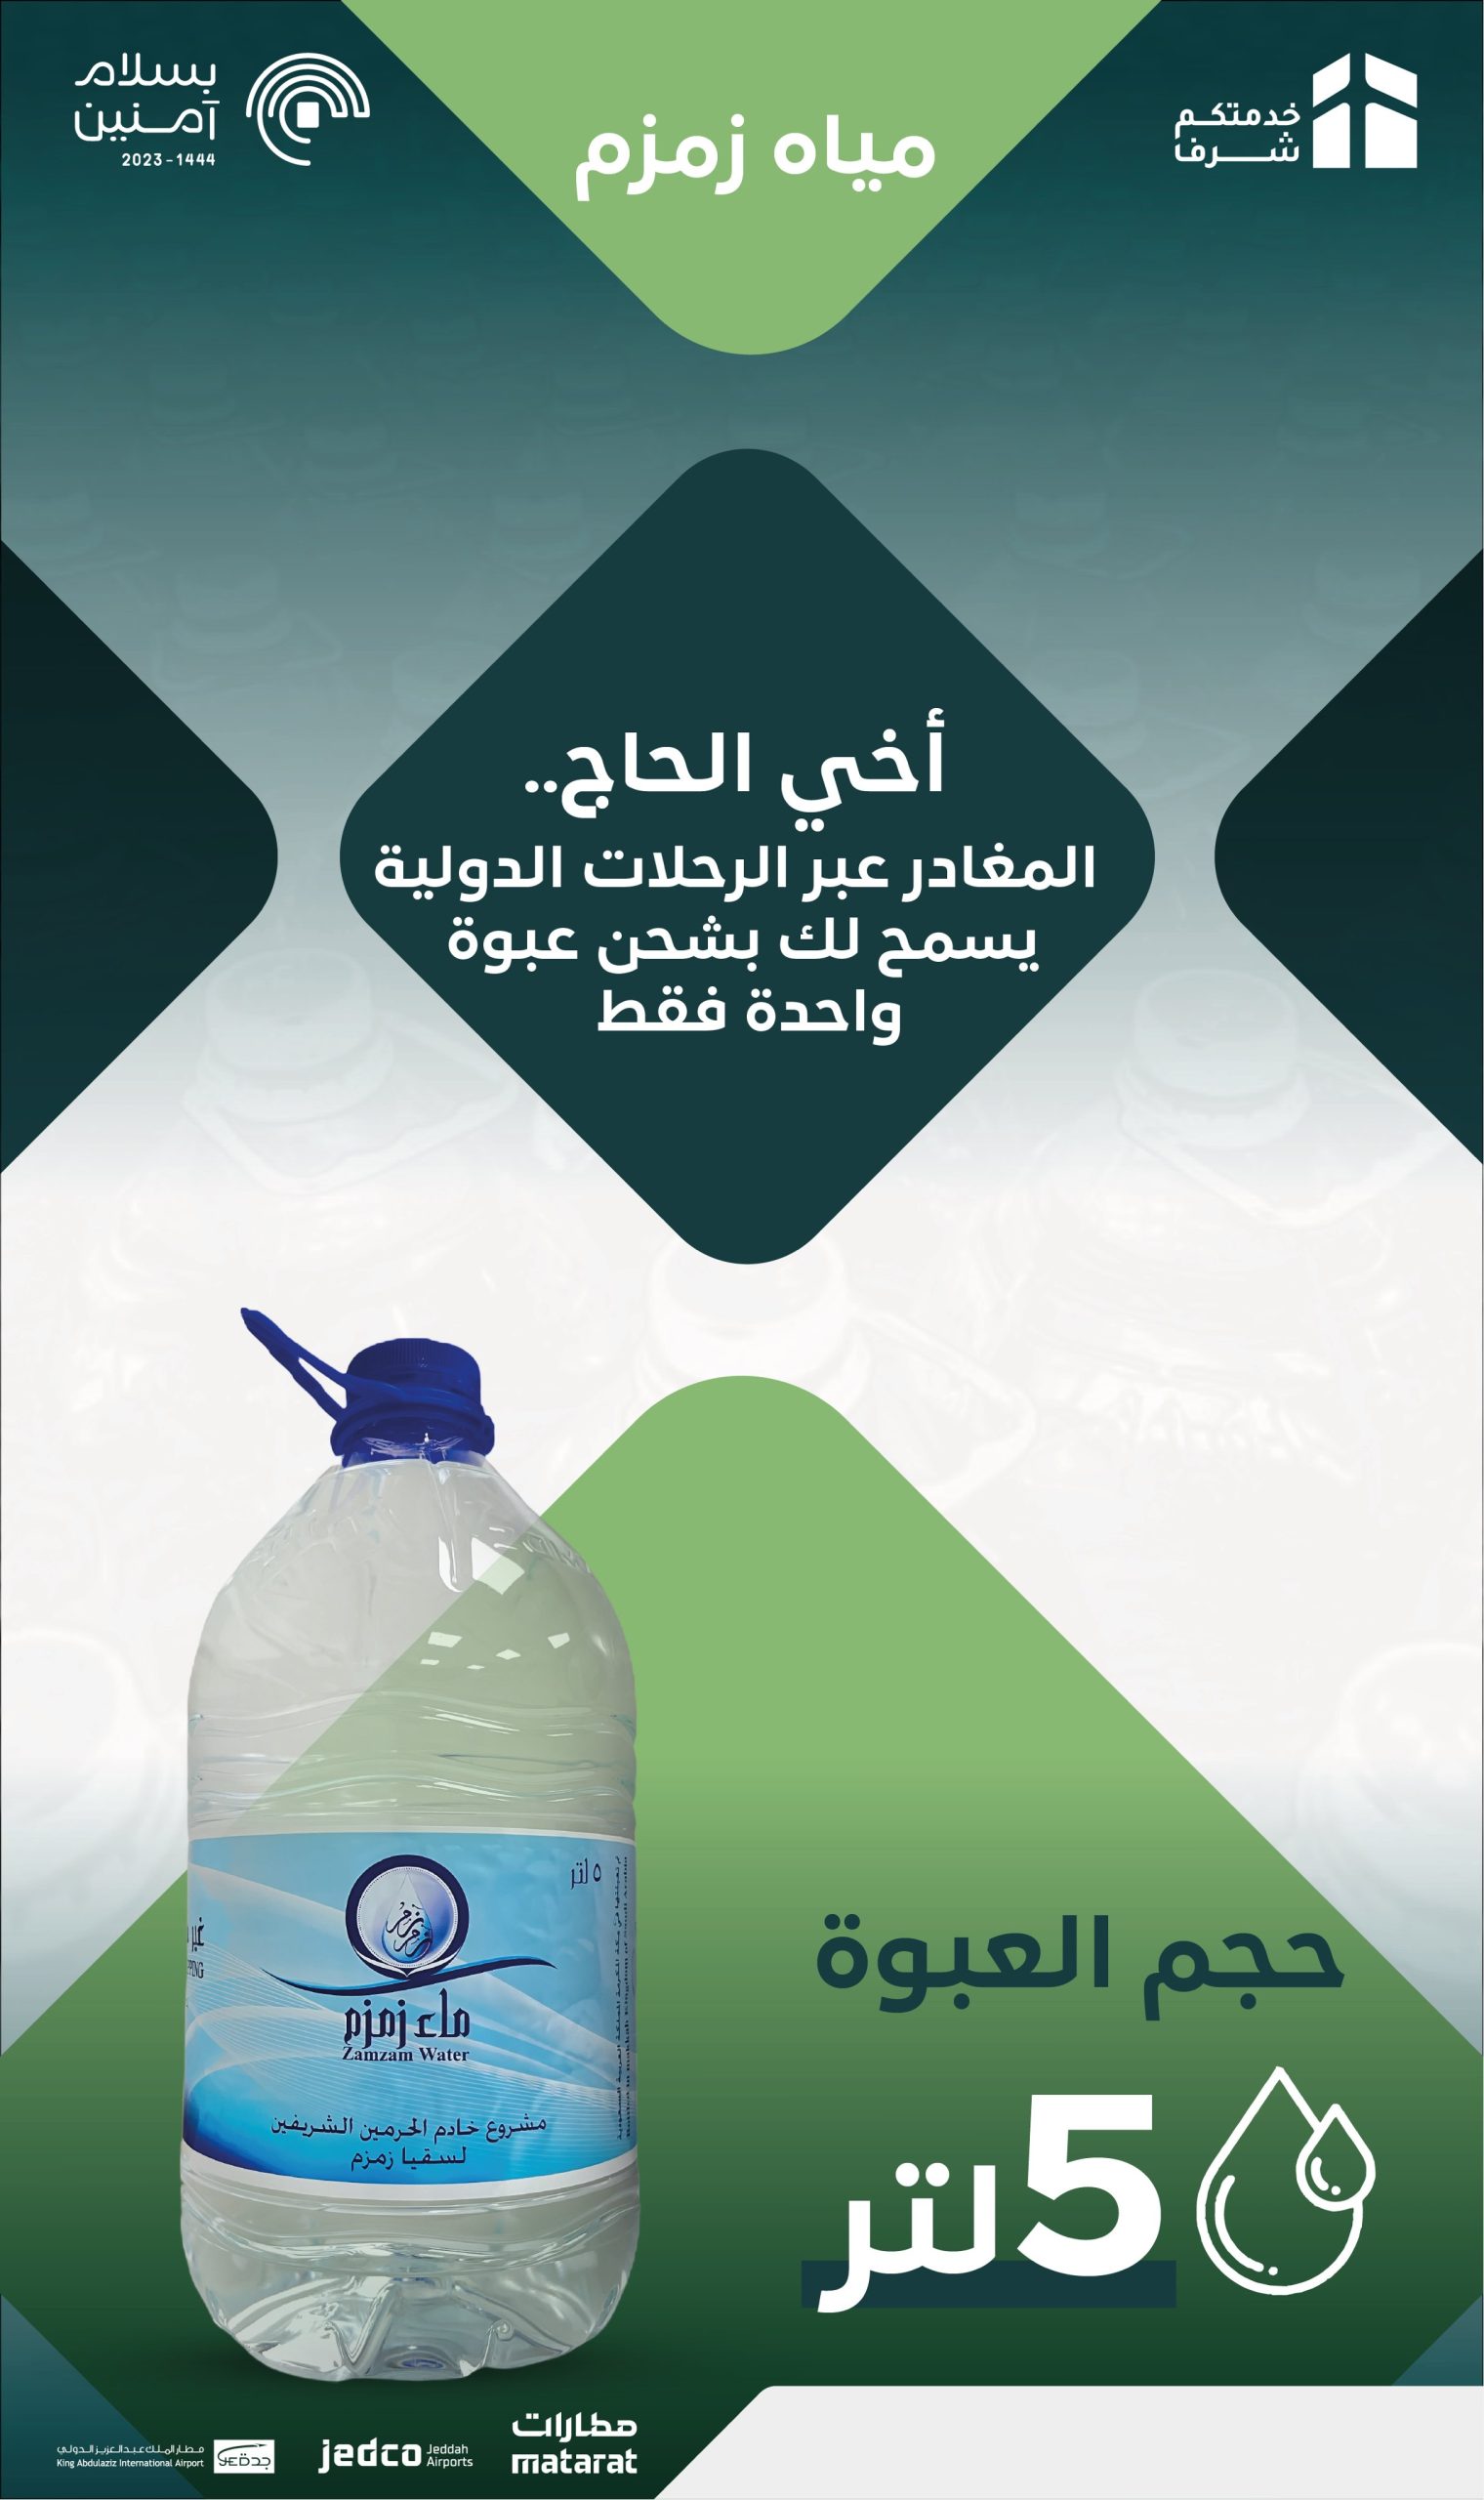 مطار الملك عبدالعزيز بجدة يعلن نقاط بيع “ماء زمزم”